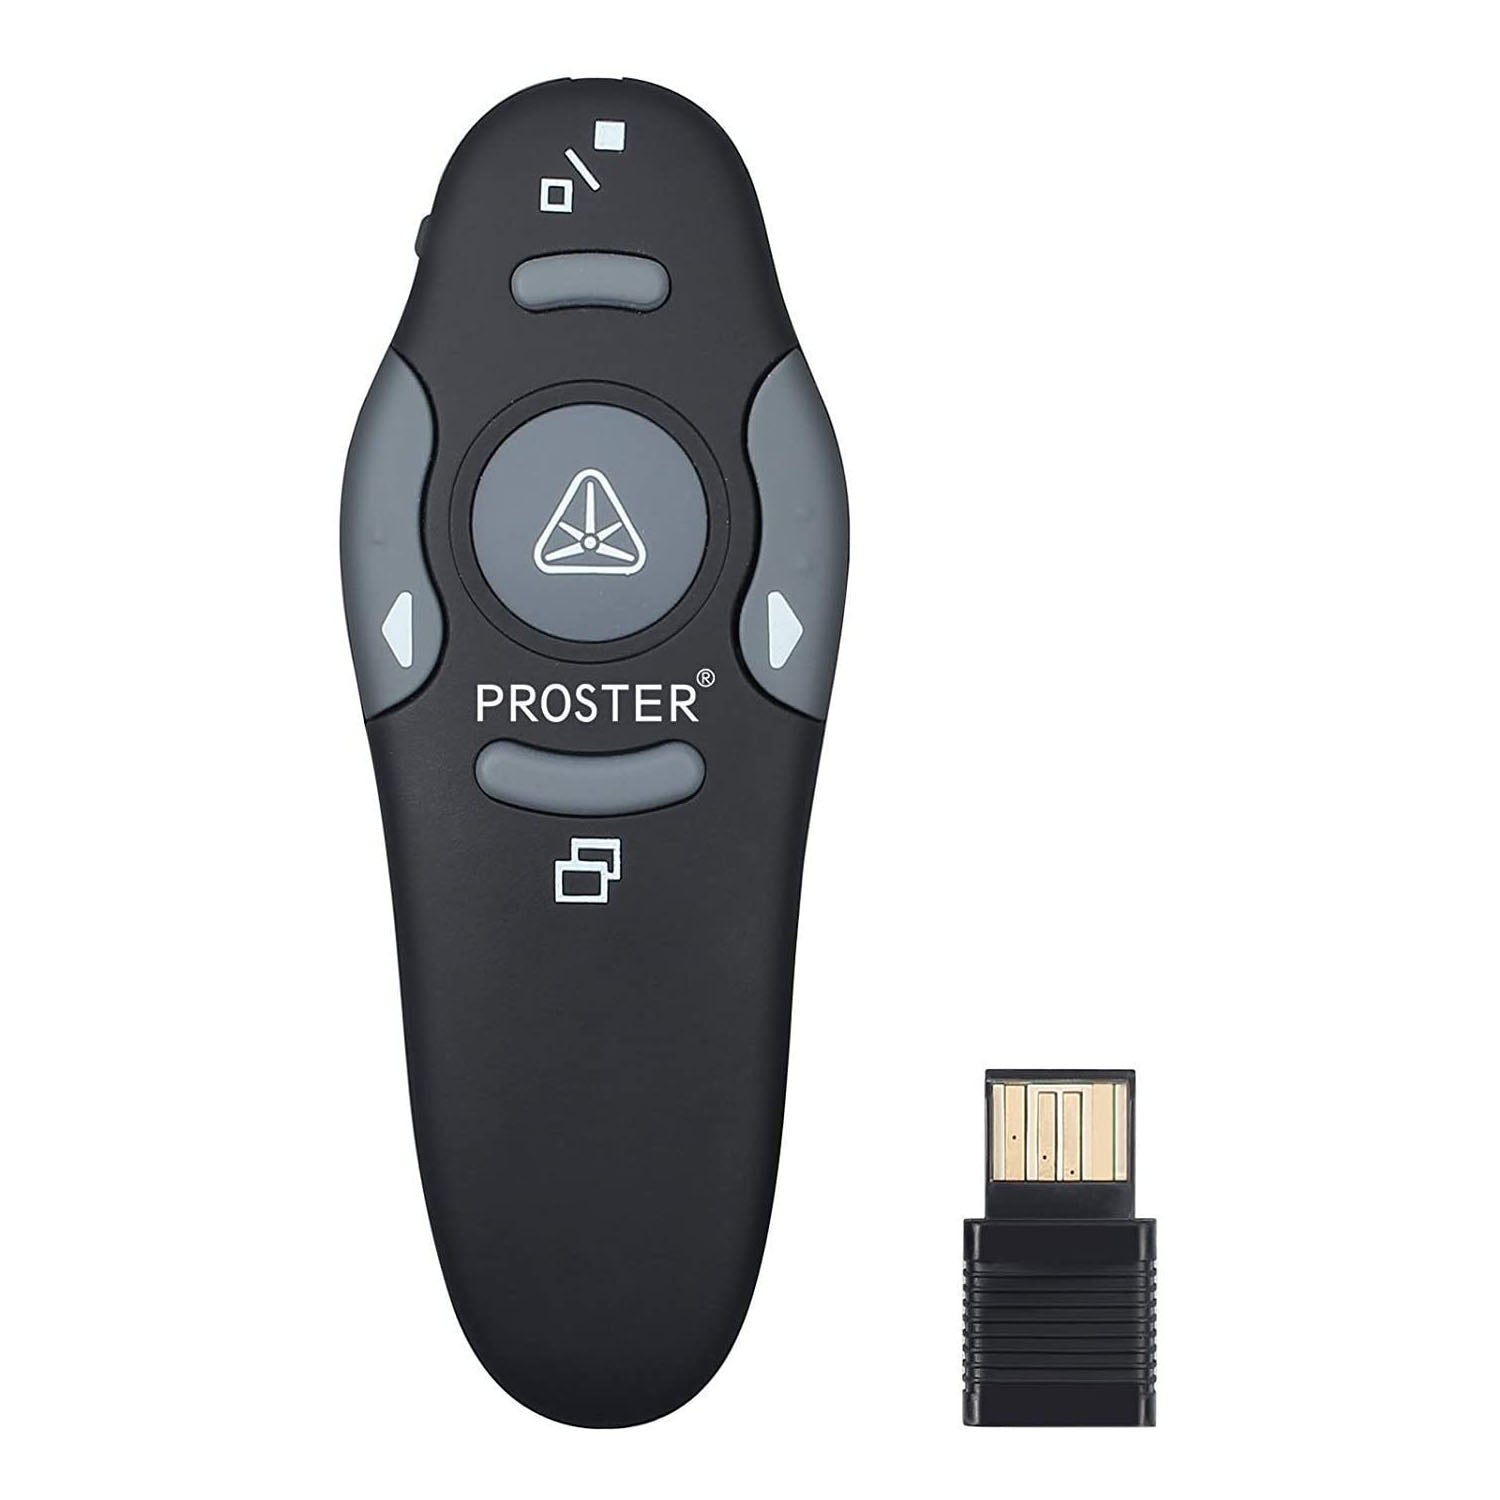 Proster Wireless Presenter 2.4GHz Wireless USB PowerPoint PPT Presenter Remote Control